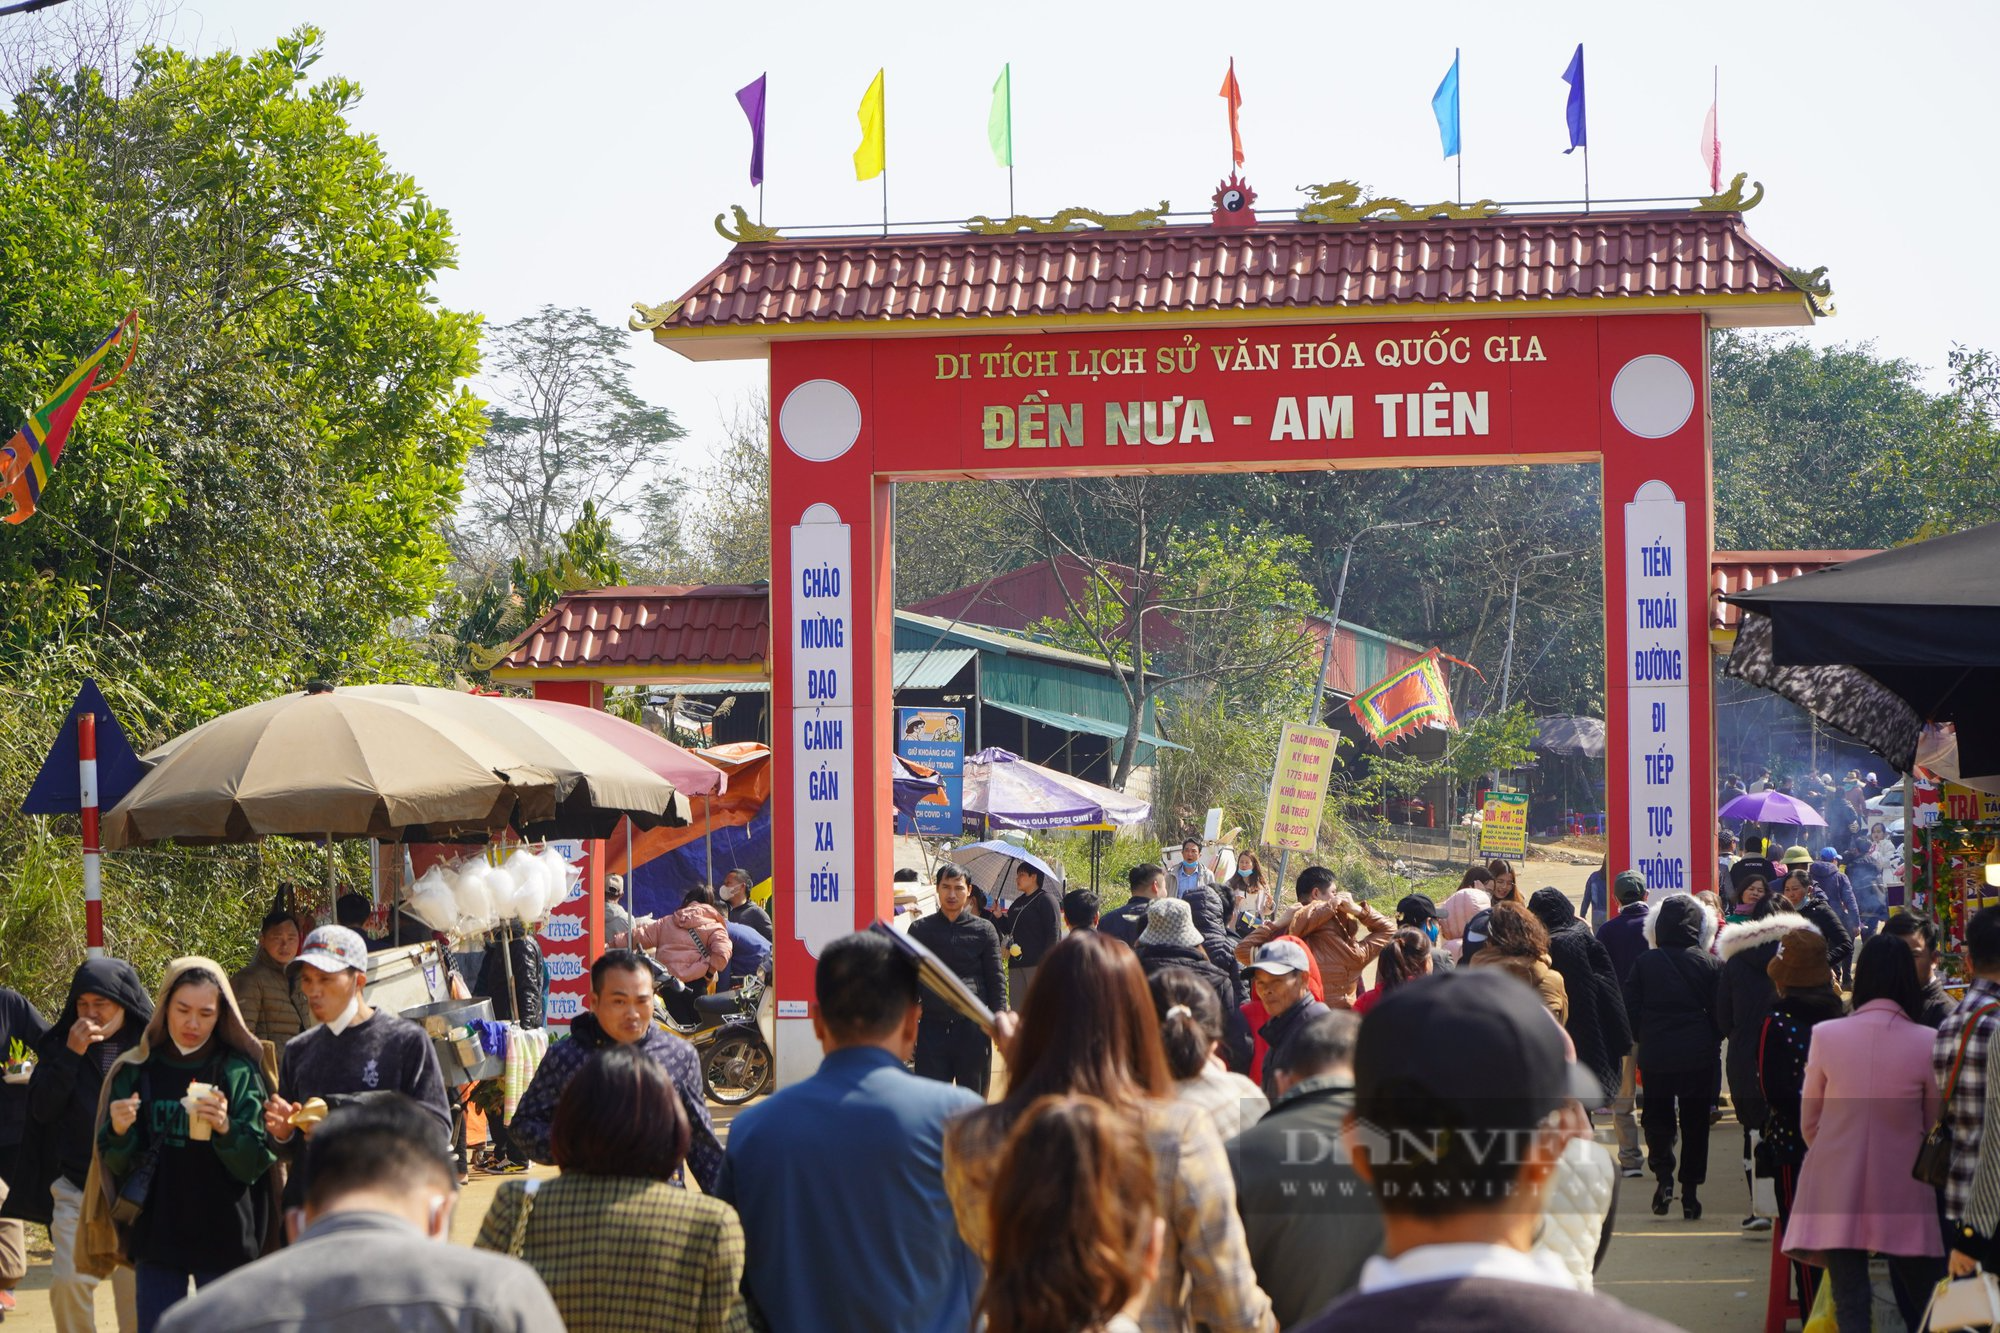 Thanh Hoá: Hàng ngàn du khách đổ về đền Nưa - Am Tiên xem ngày “mở cổng trời” - Ảnh 1.